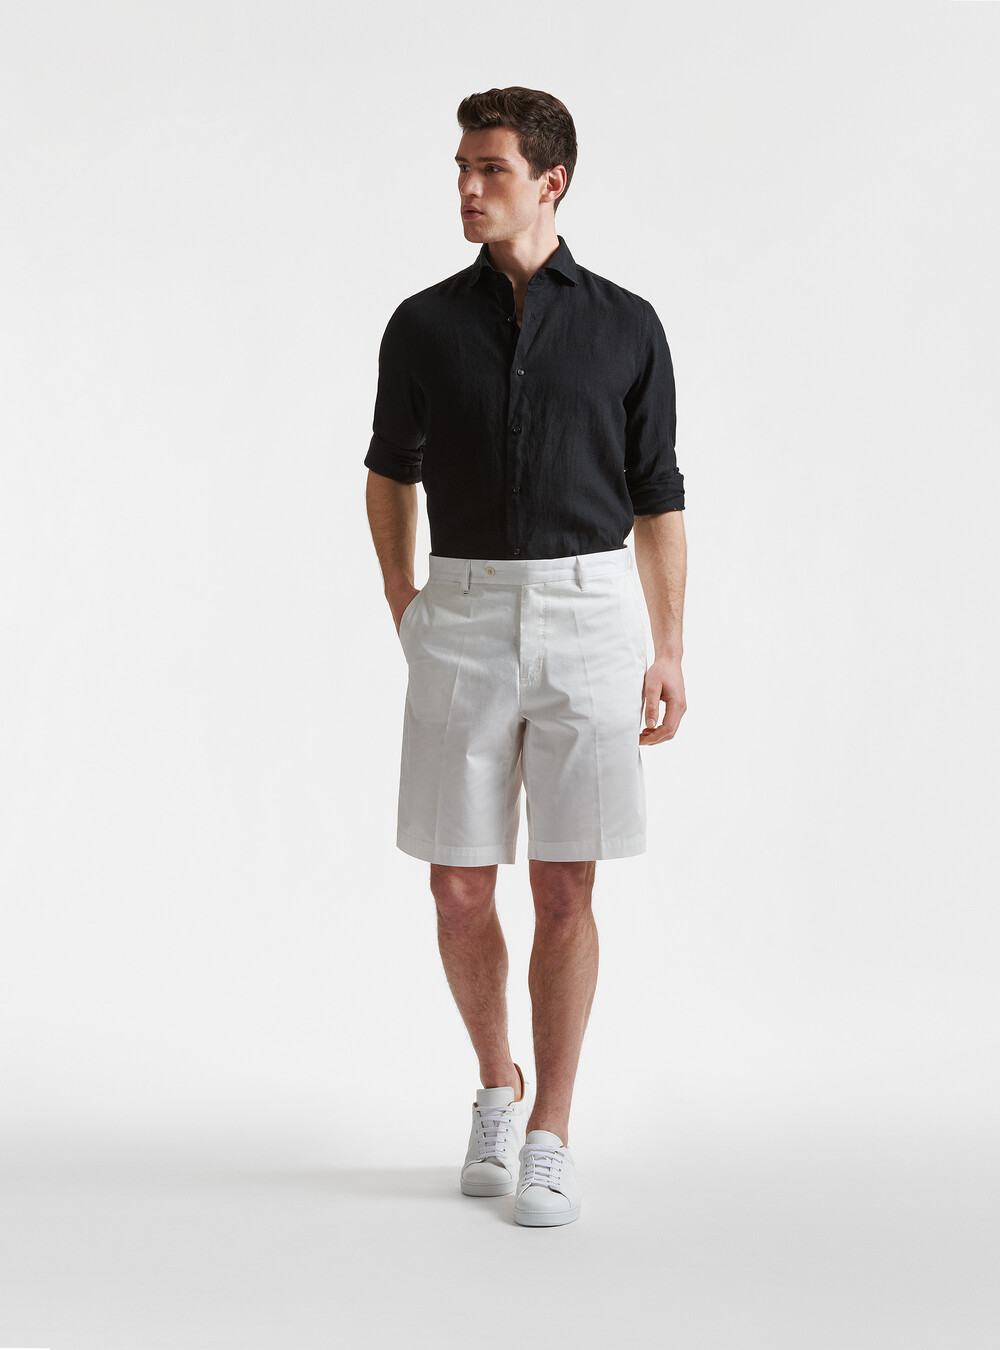 Shorts for men by Gutteridge